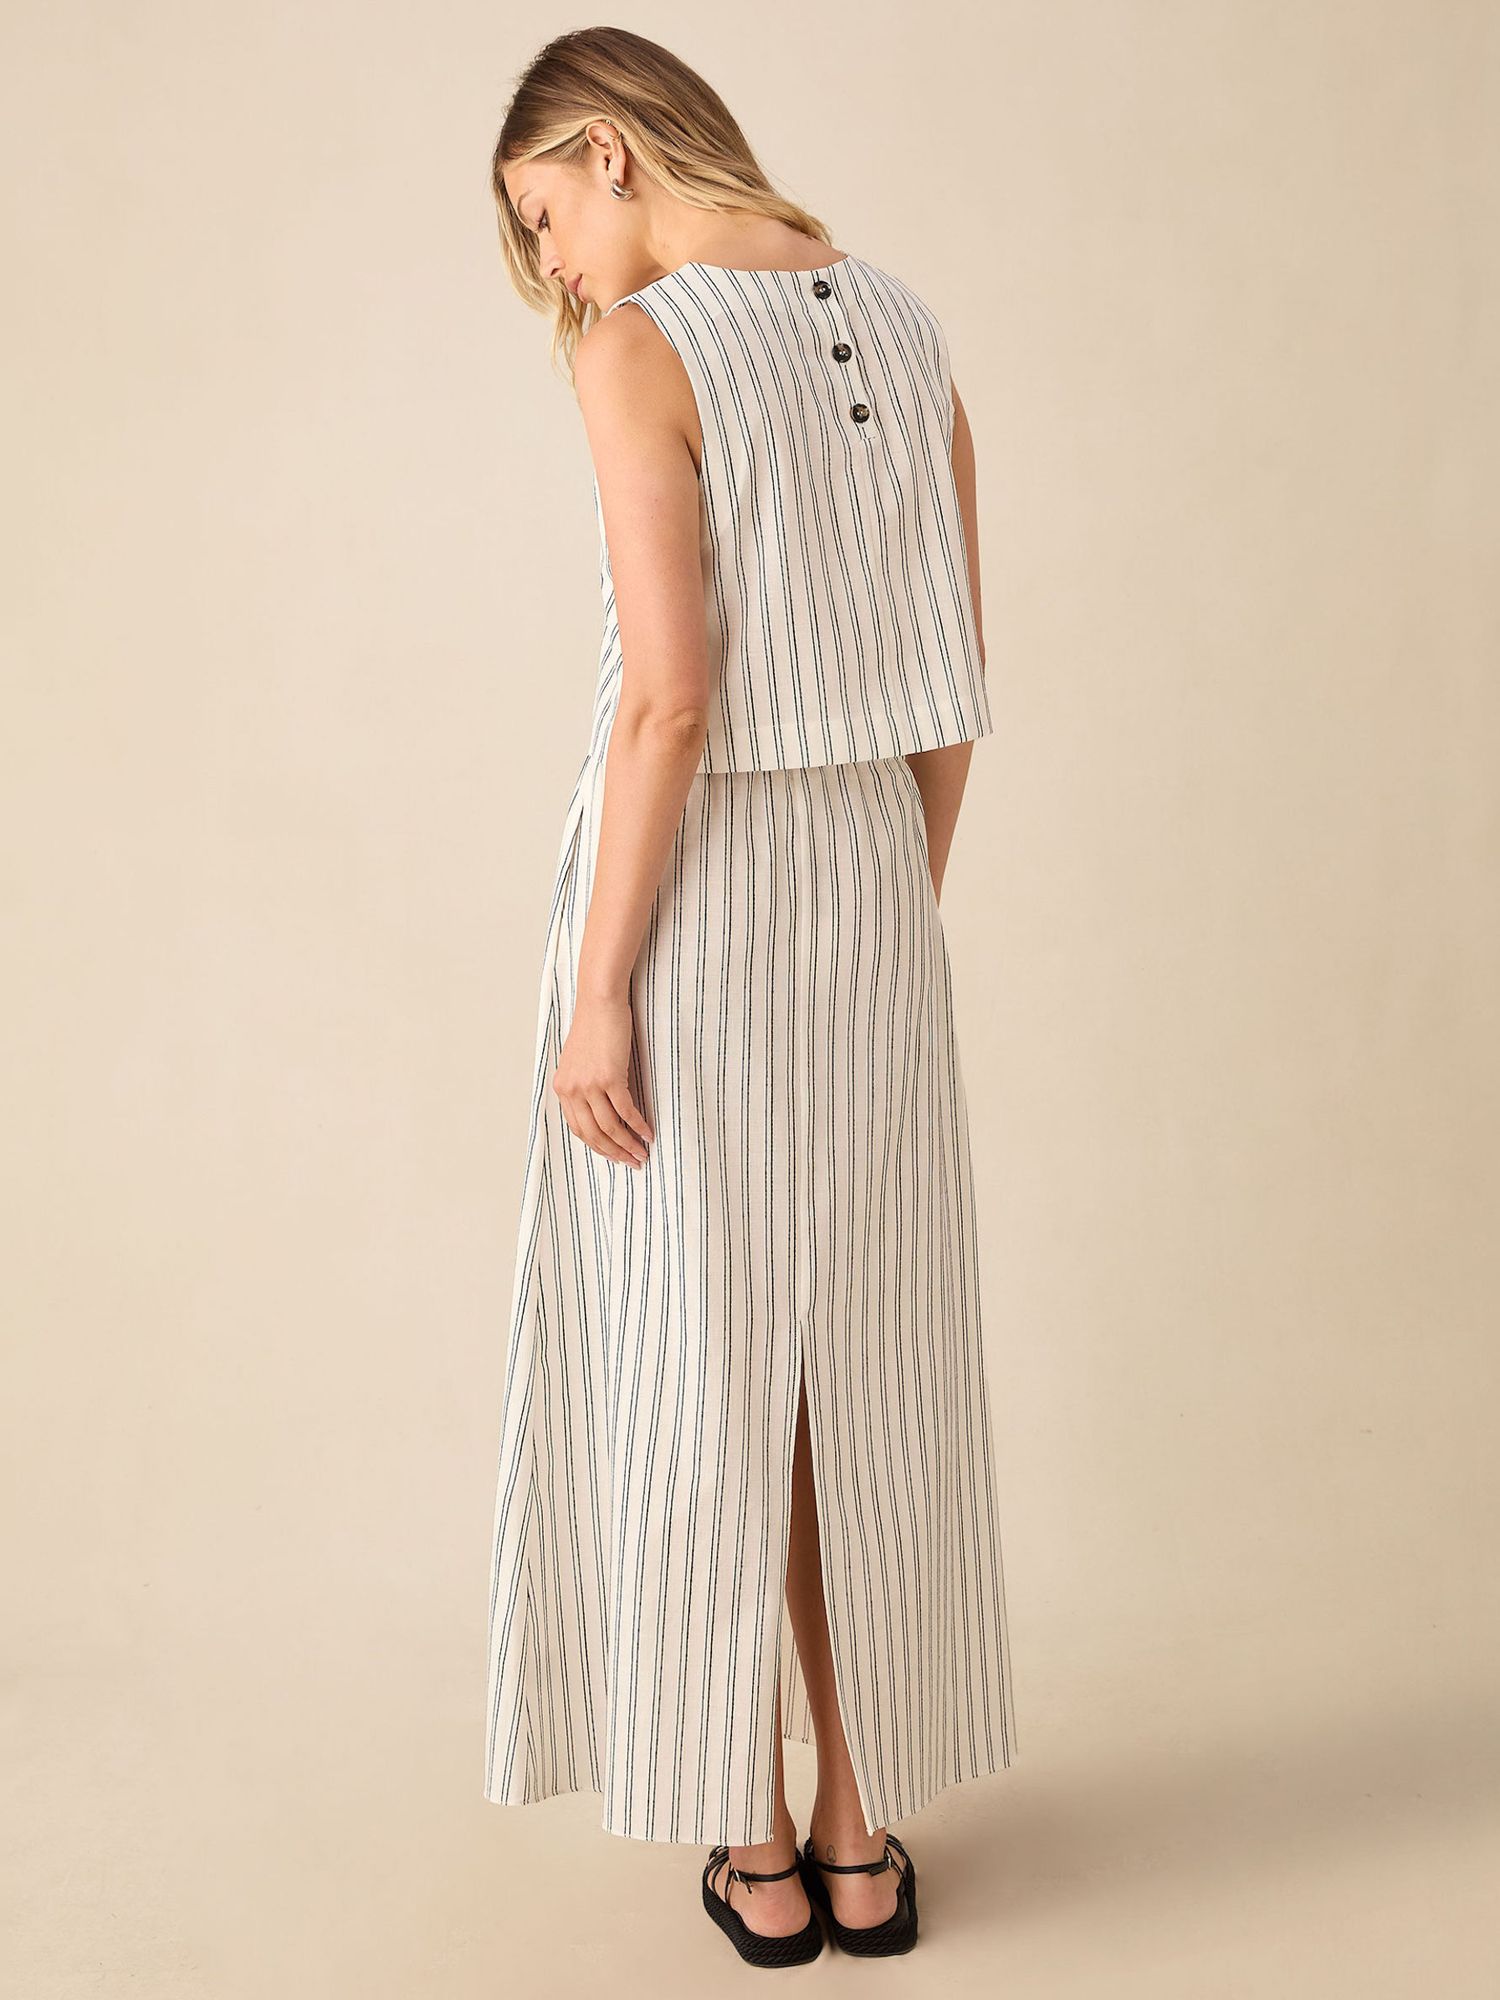 Ro&Zo Double Stripe Linen Blend Maxi Skirt, Ivory/Black, 6